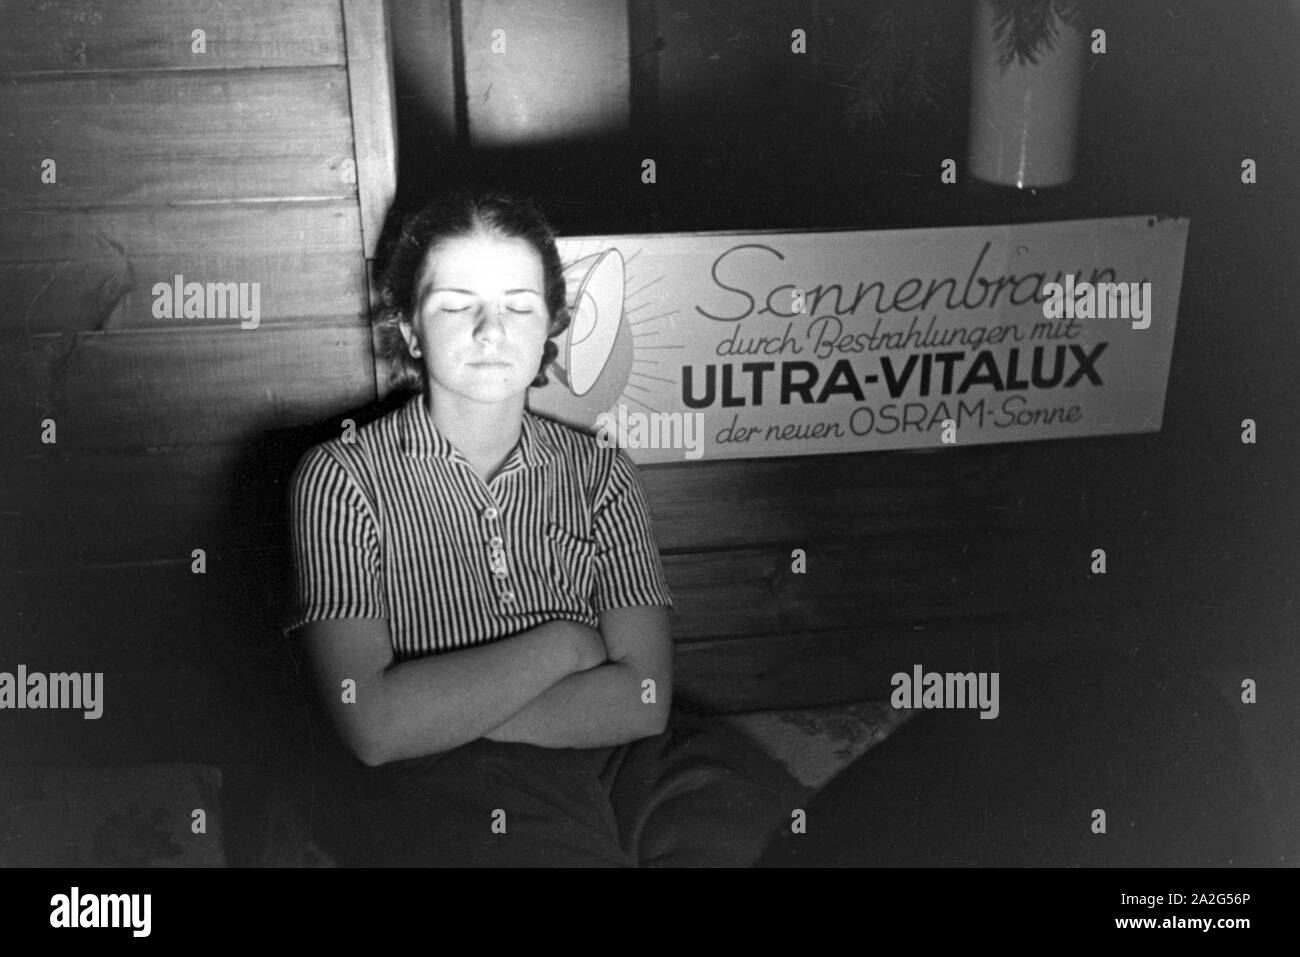 Eine junge Frau nimmt ein Sonnenbad vor der Lampe einer Höhensonne der Firma Ultra Vitalux mit der neuen Osram Lampe, Deutschland 1930er Jahre. A young woman tanning with the new Ultra Vitalux sunlamp, Germany 1930s. Stock Photo